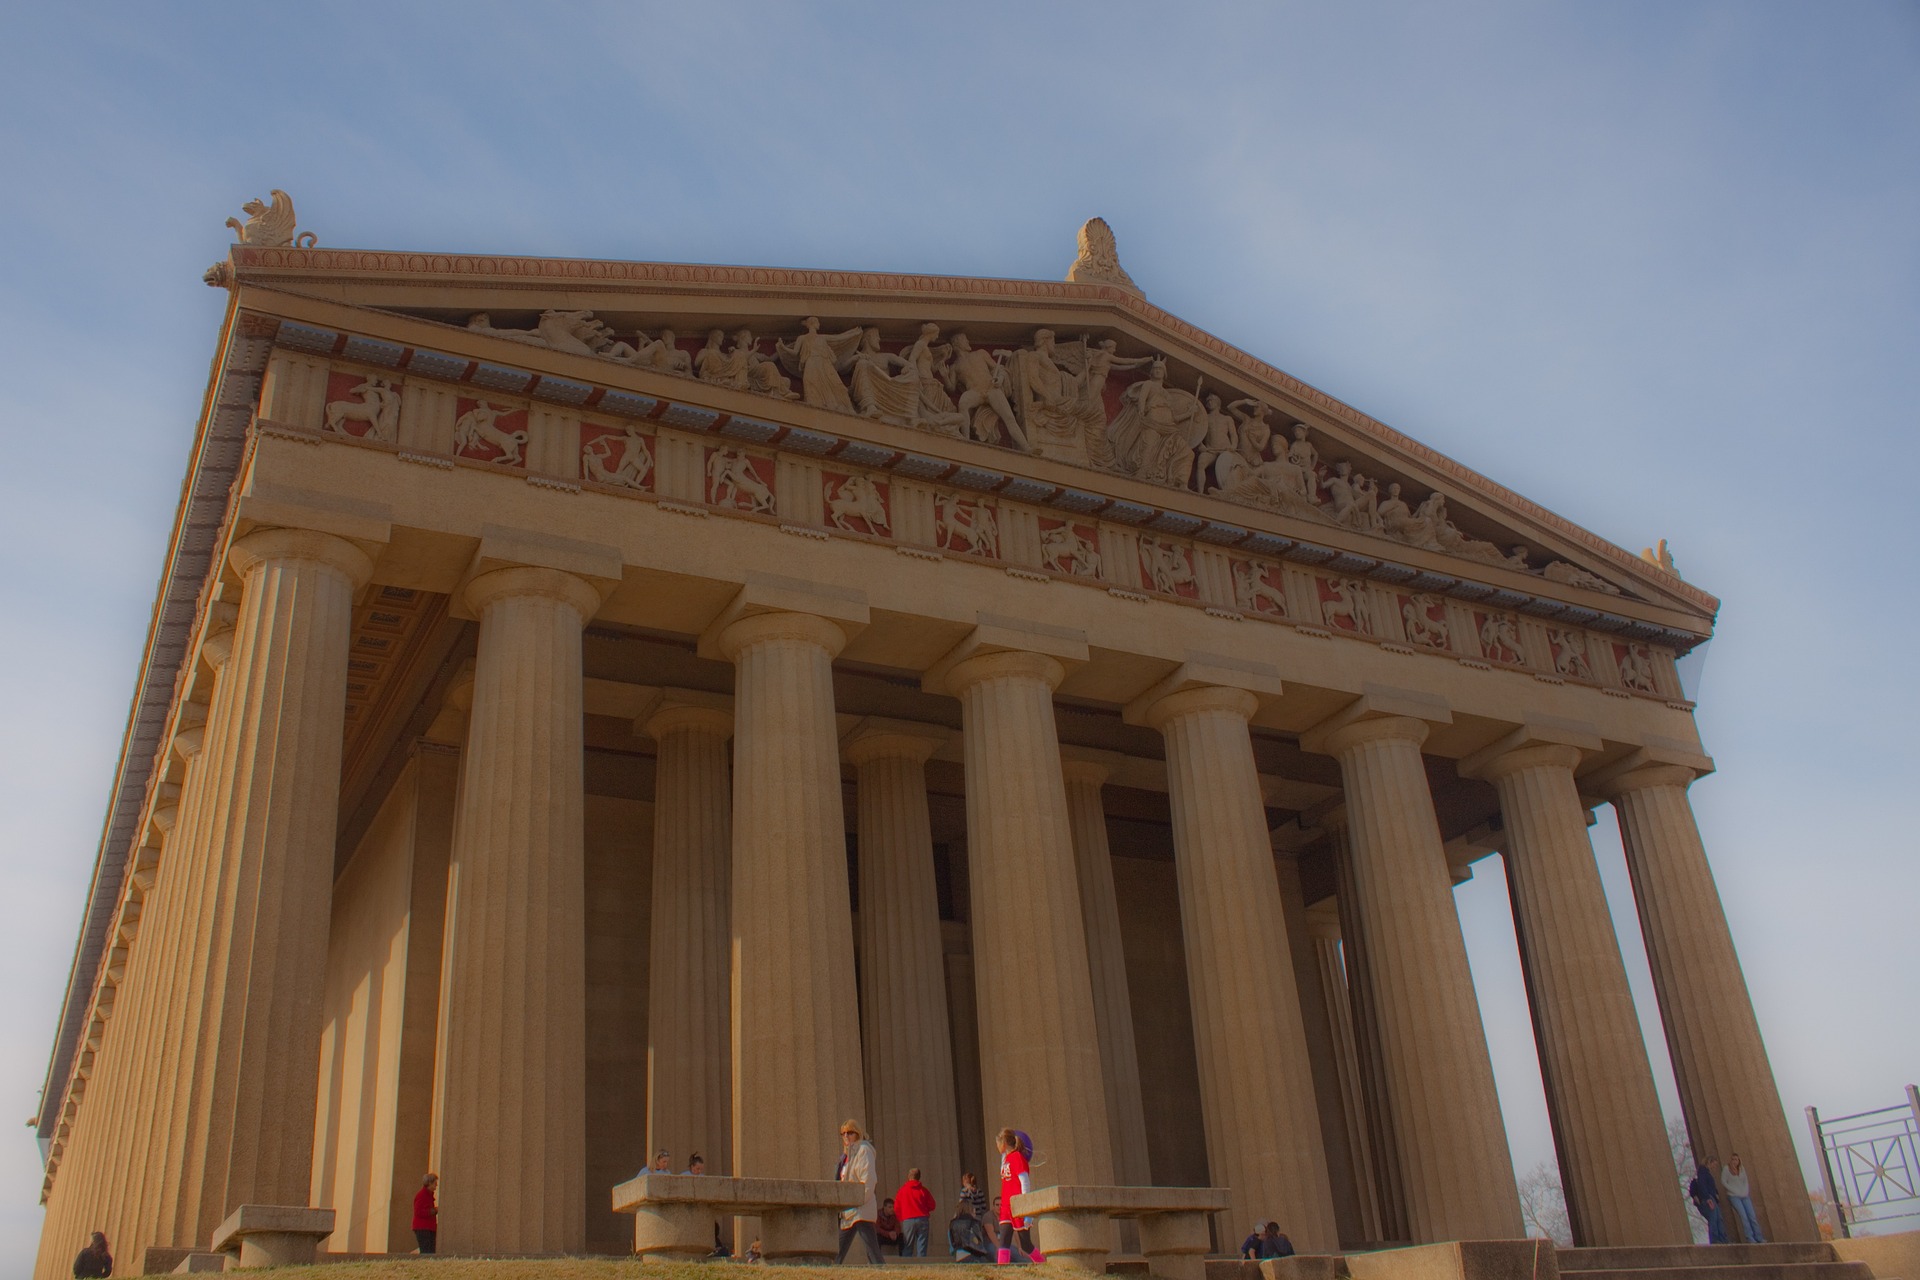 The replica Parthenon in Nashville, TN